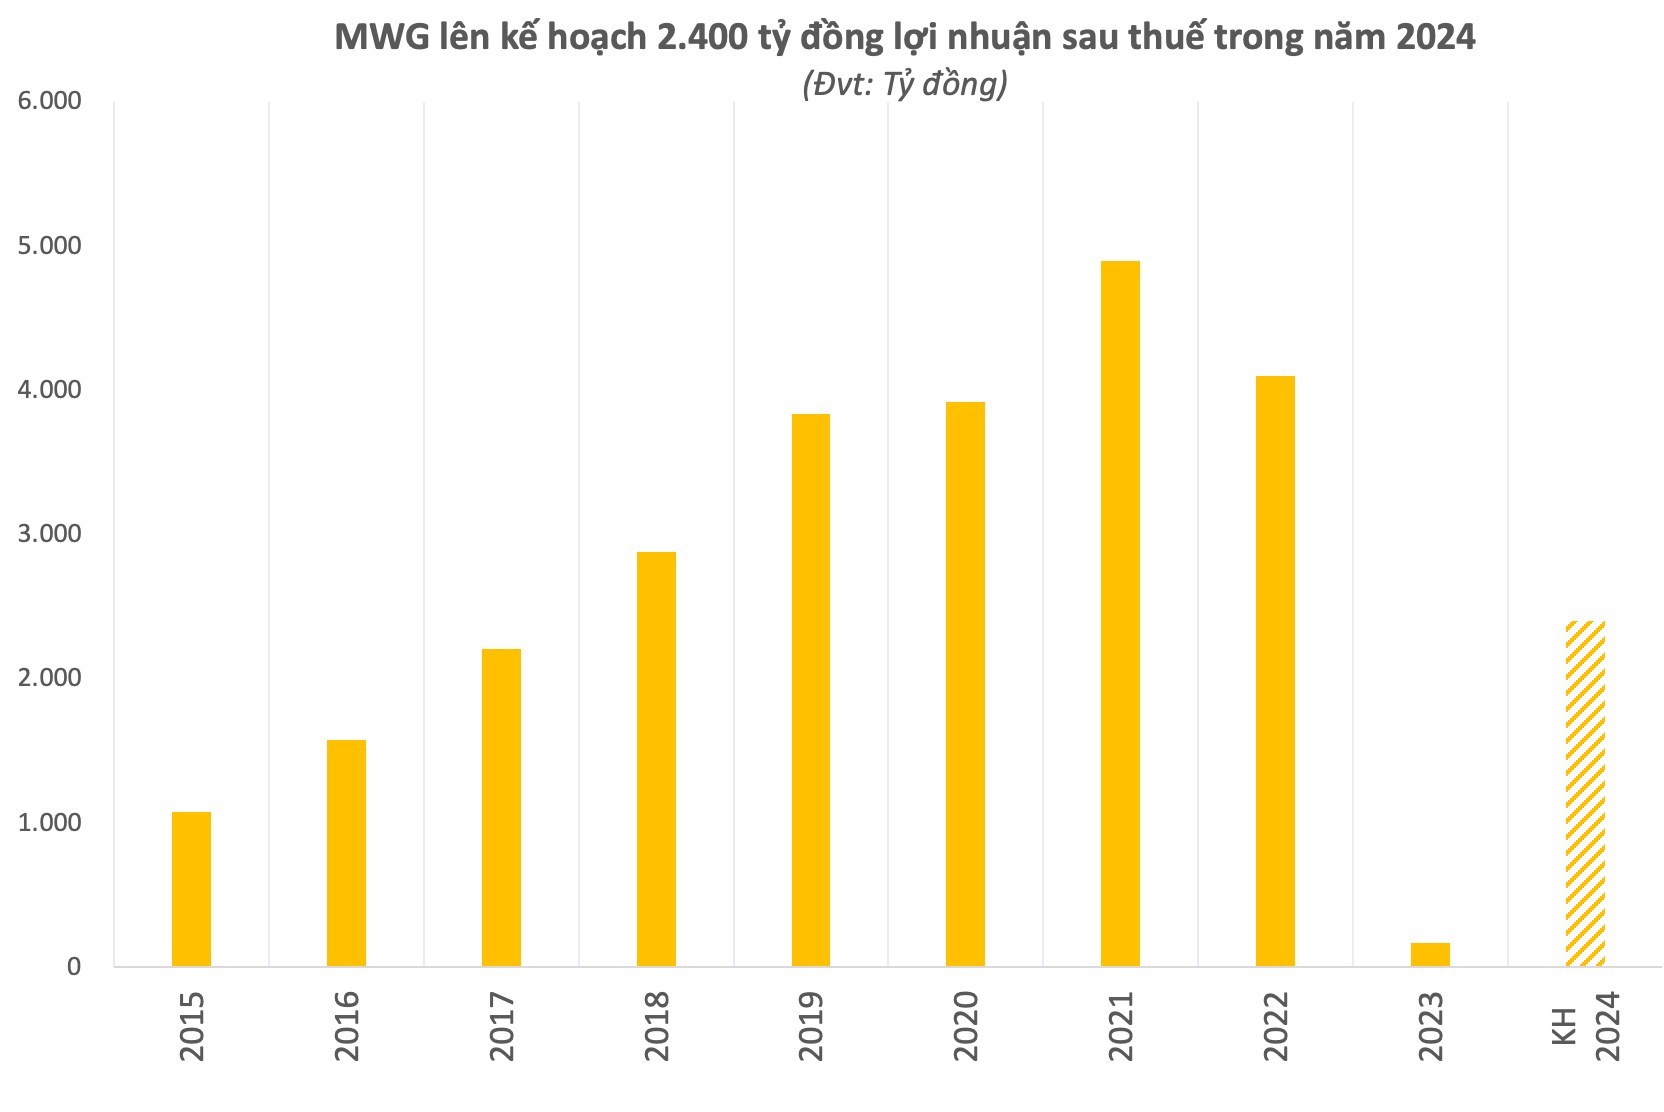 Nguồn: Tổng hợp dữ liệu từ MWG